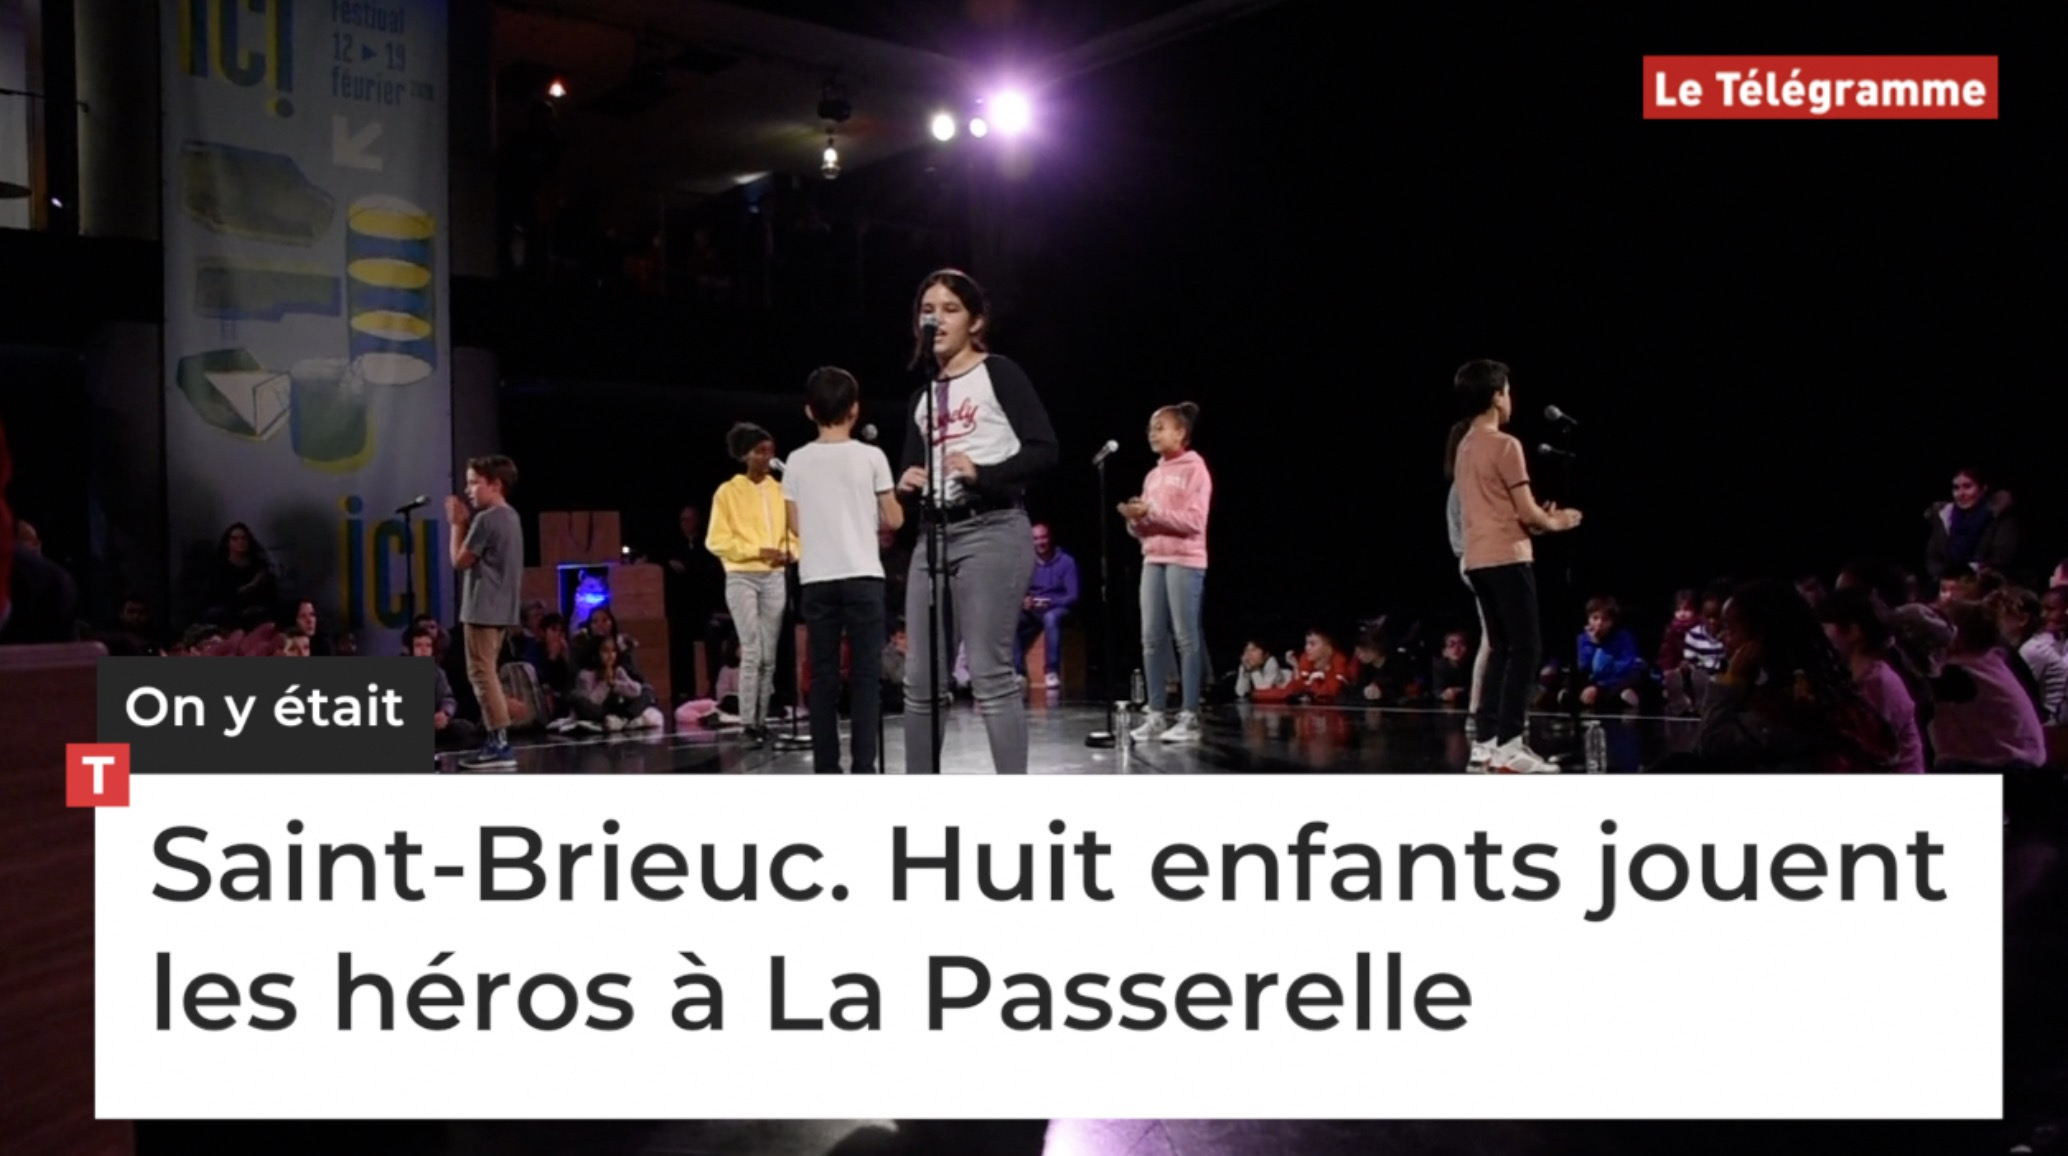 Saint-Brieuc. Entre Eminem, Björk et Arcade Fire, huit enfants ont joué les héros (Le Télégramme)